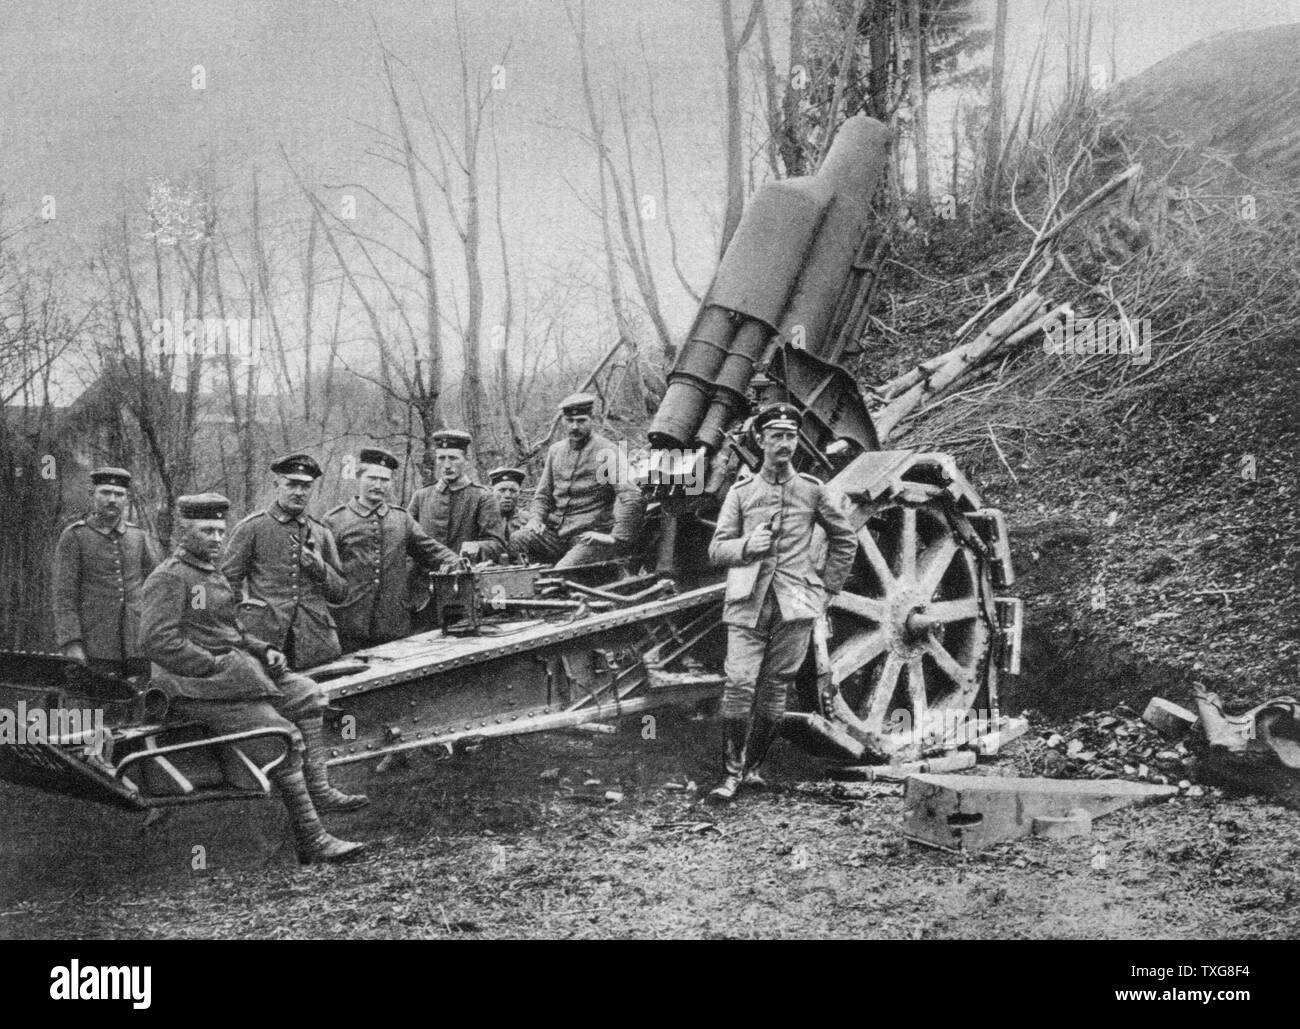 La Première Guerre mondiale : Front de l'Est. Mortier allemand en position près de Brasov, en Transylvanie - Roumanie Banque D'Images